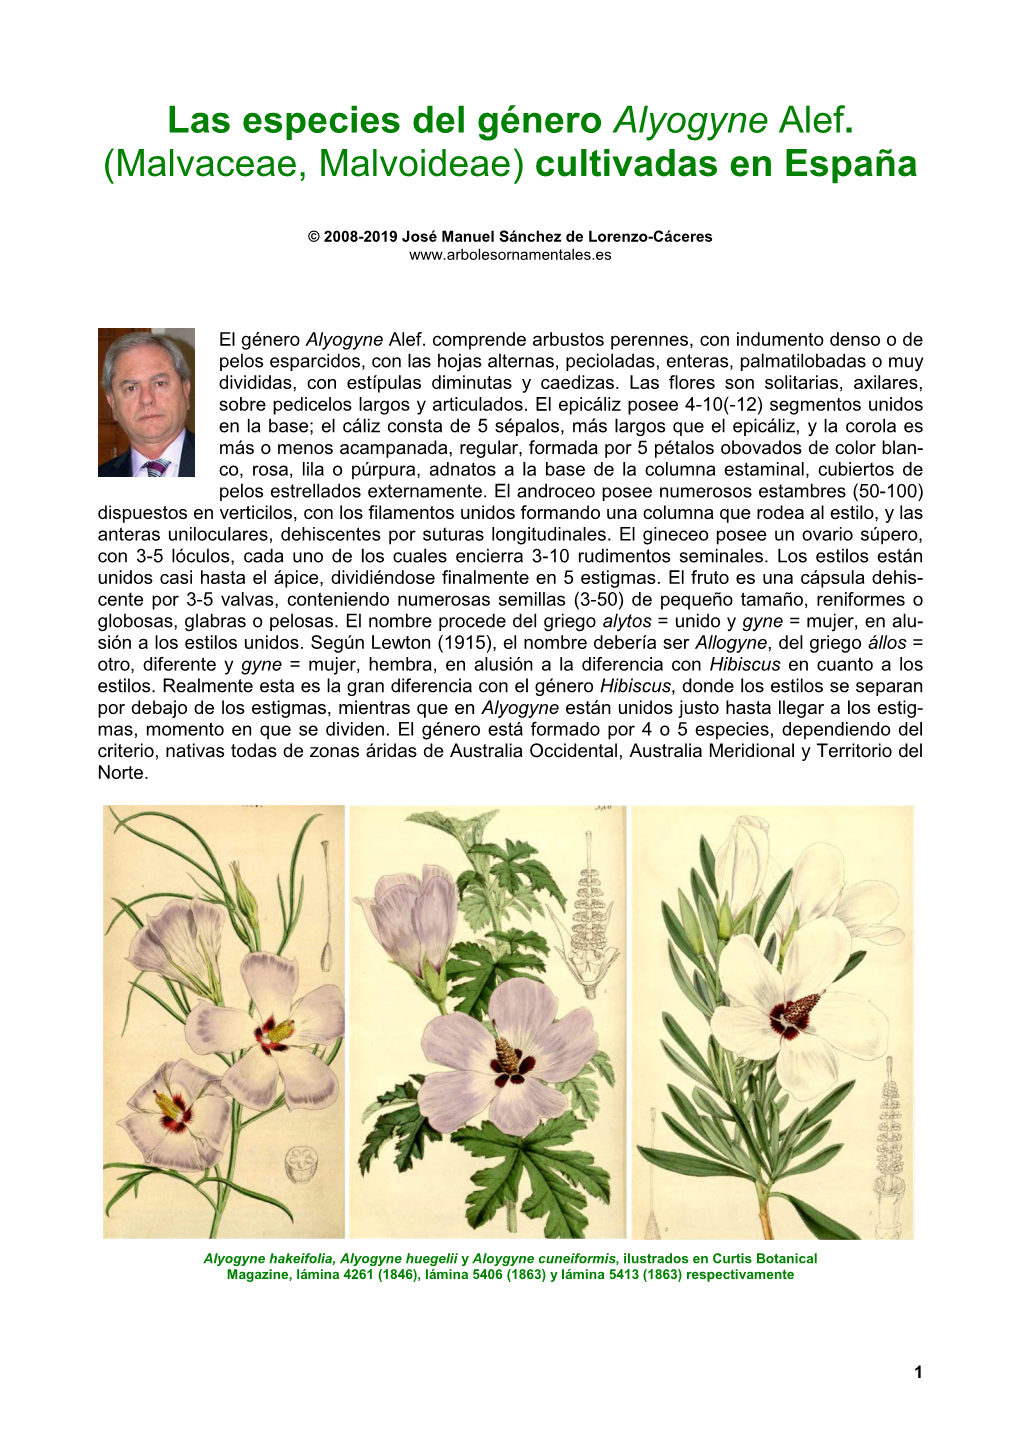 Las Especies Del Género Alyogyne Alef. (Malvaceae, Malvoideae) Cultivadas En España